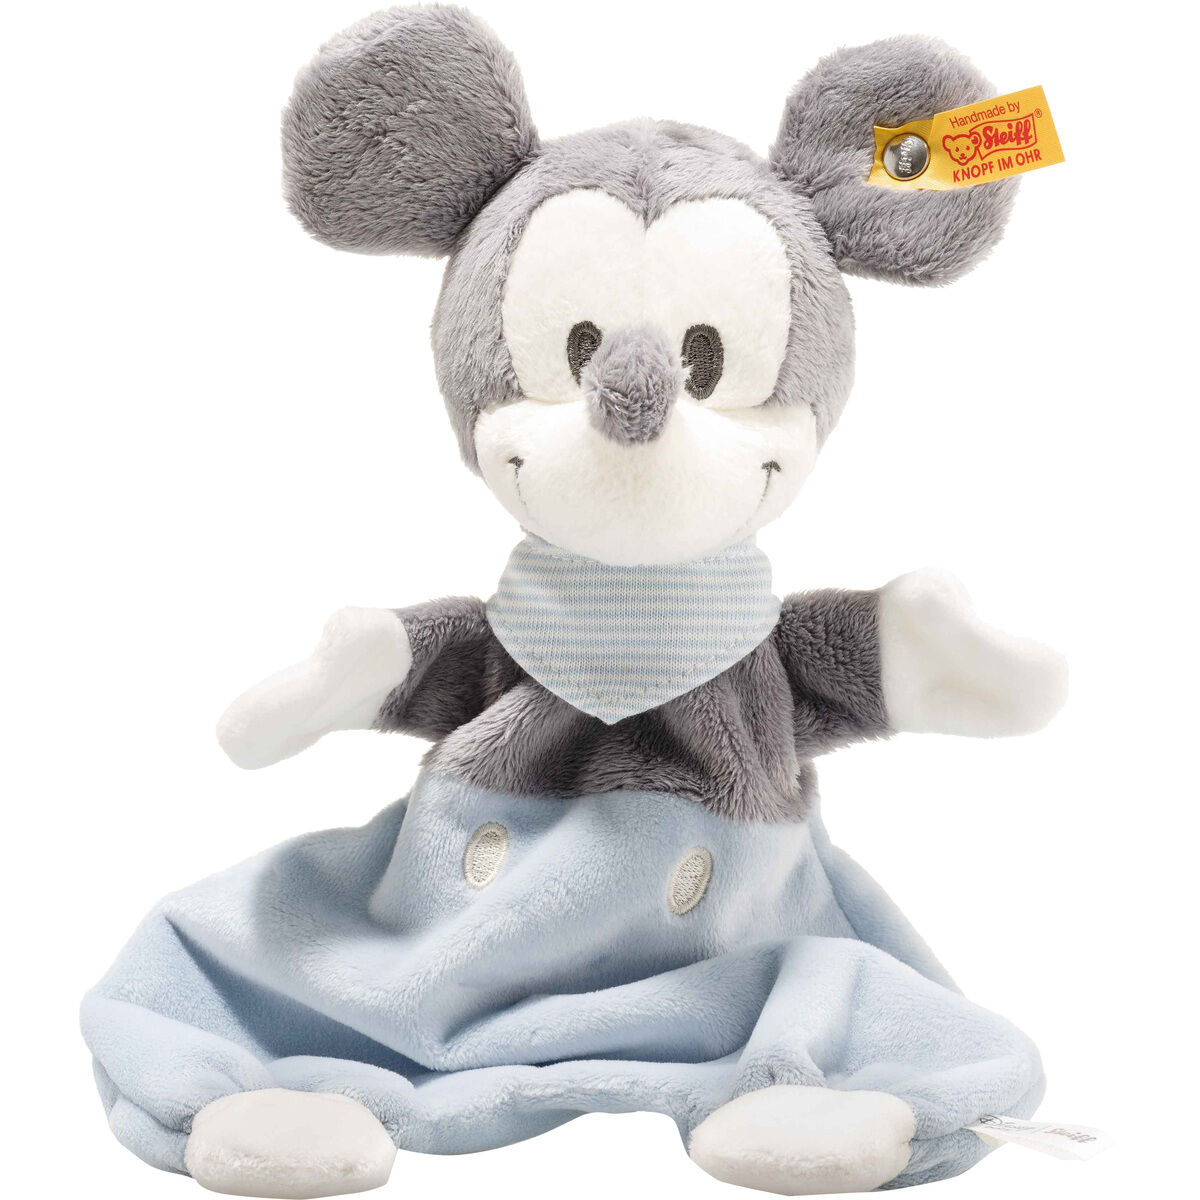 STEIFF 290169 Disney Mickey Mouse Schmusetuch 29cm blau Maus Baby mit Knisterfolie 29 cm